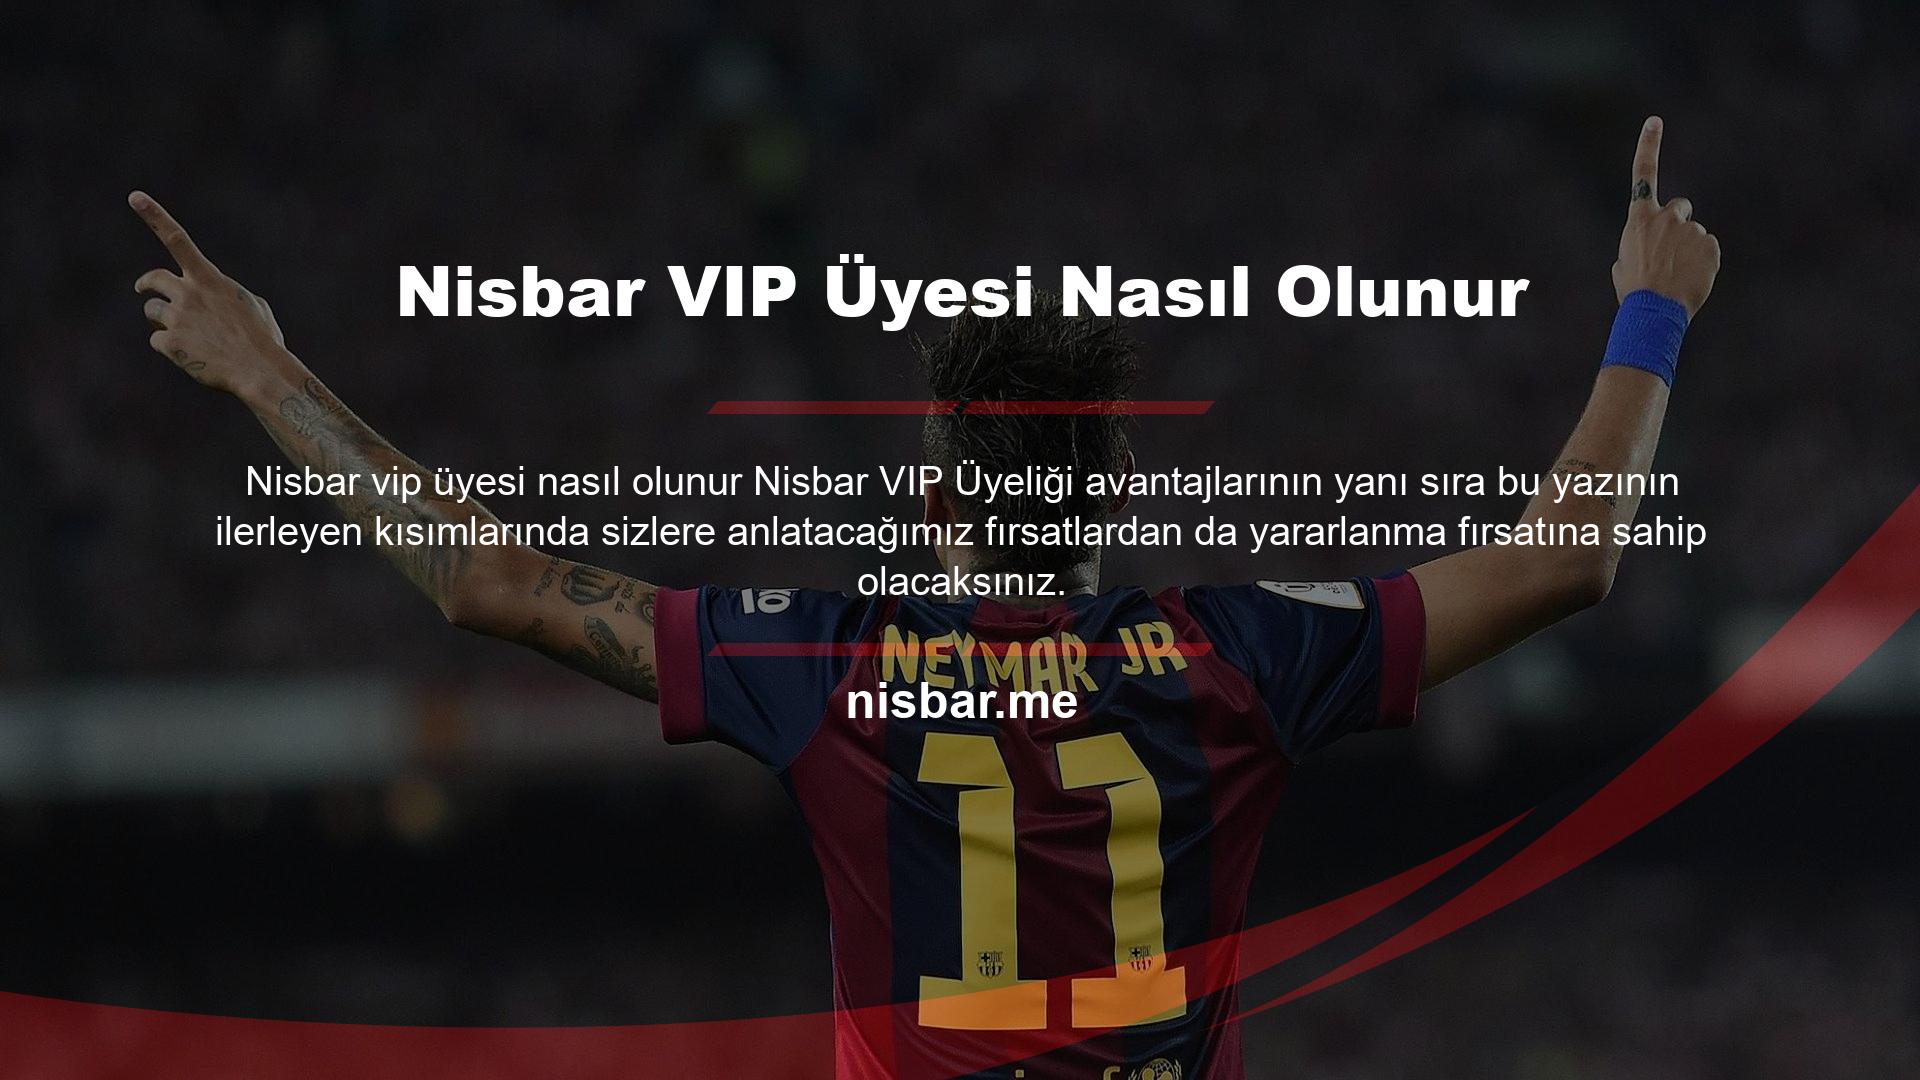 Öncelikle Nisbar VIP üye olmak için oyunu oynamak için belirli bir limitin üzerinde yatırım yapmanız gerekmektedir